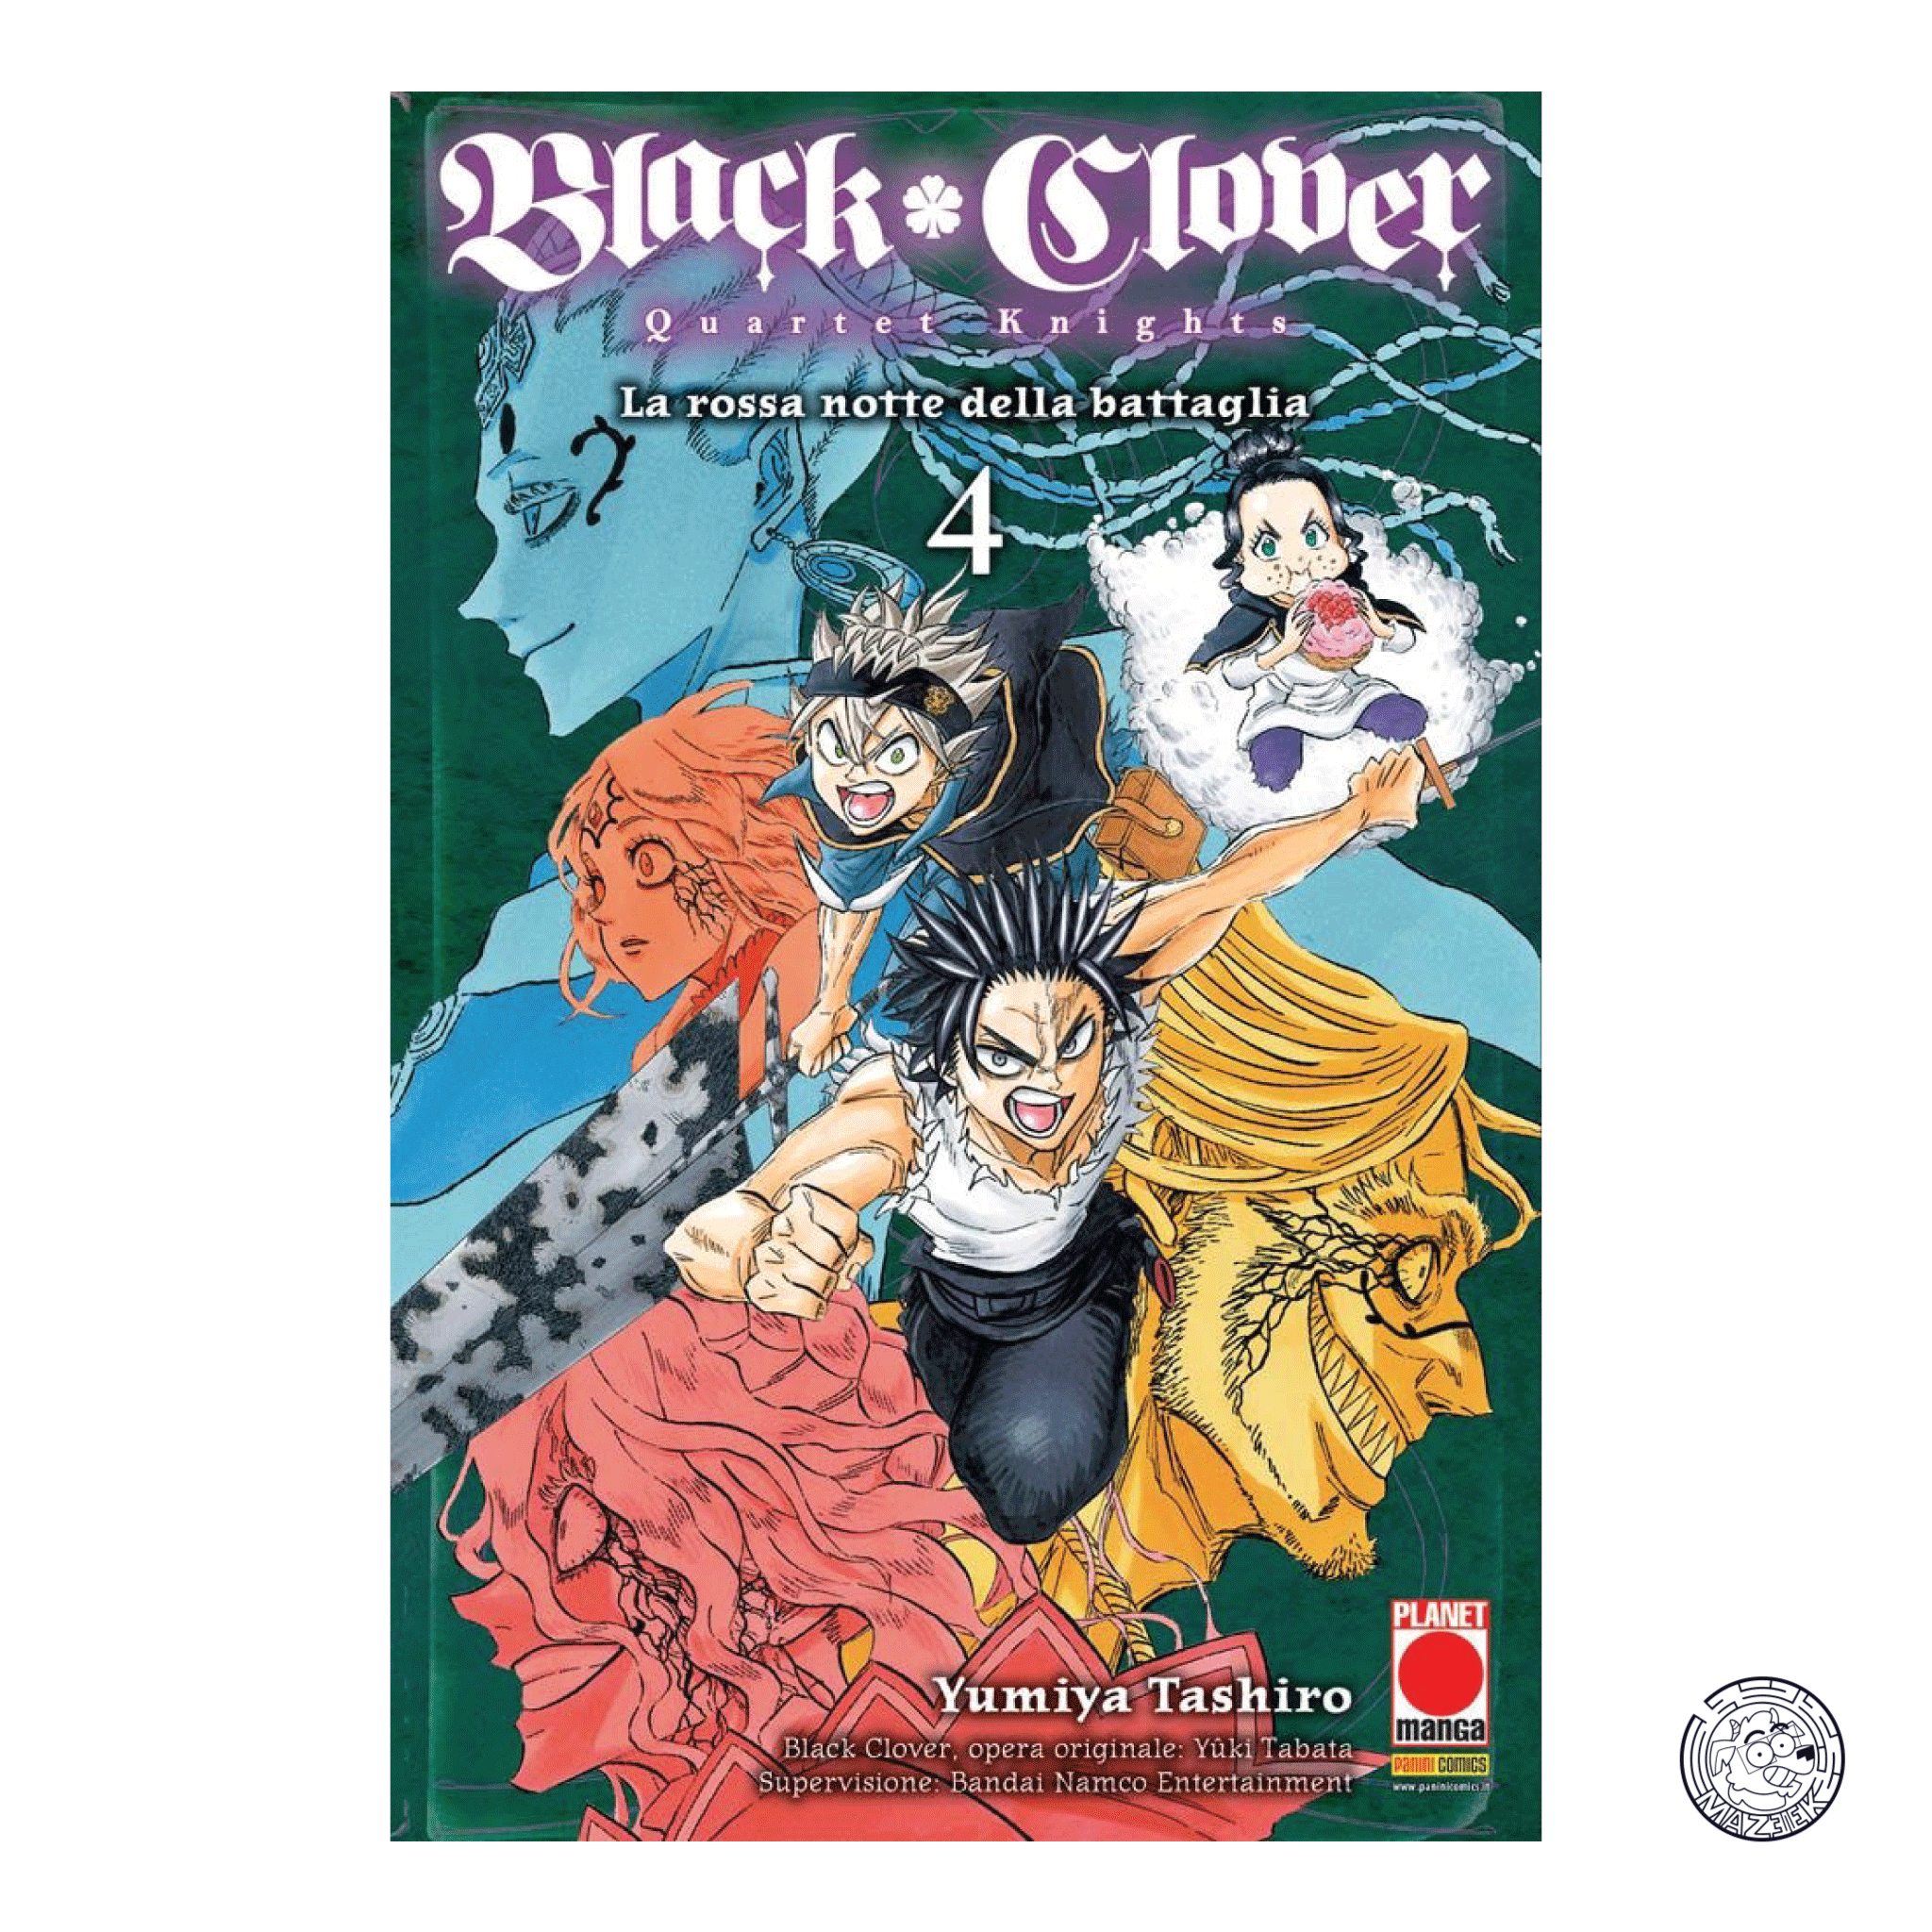 Black Clover Quartet Knights 04